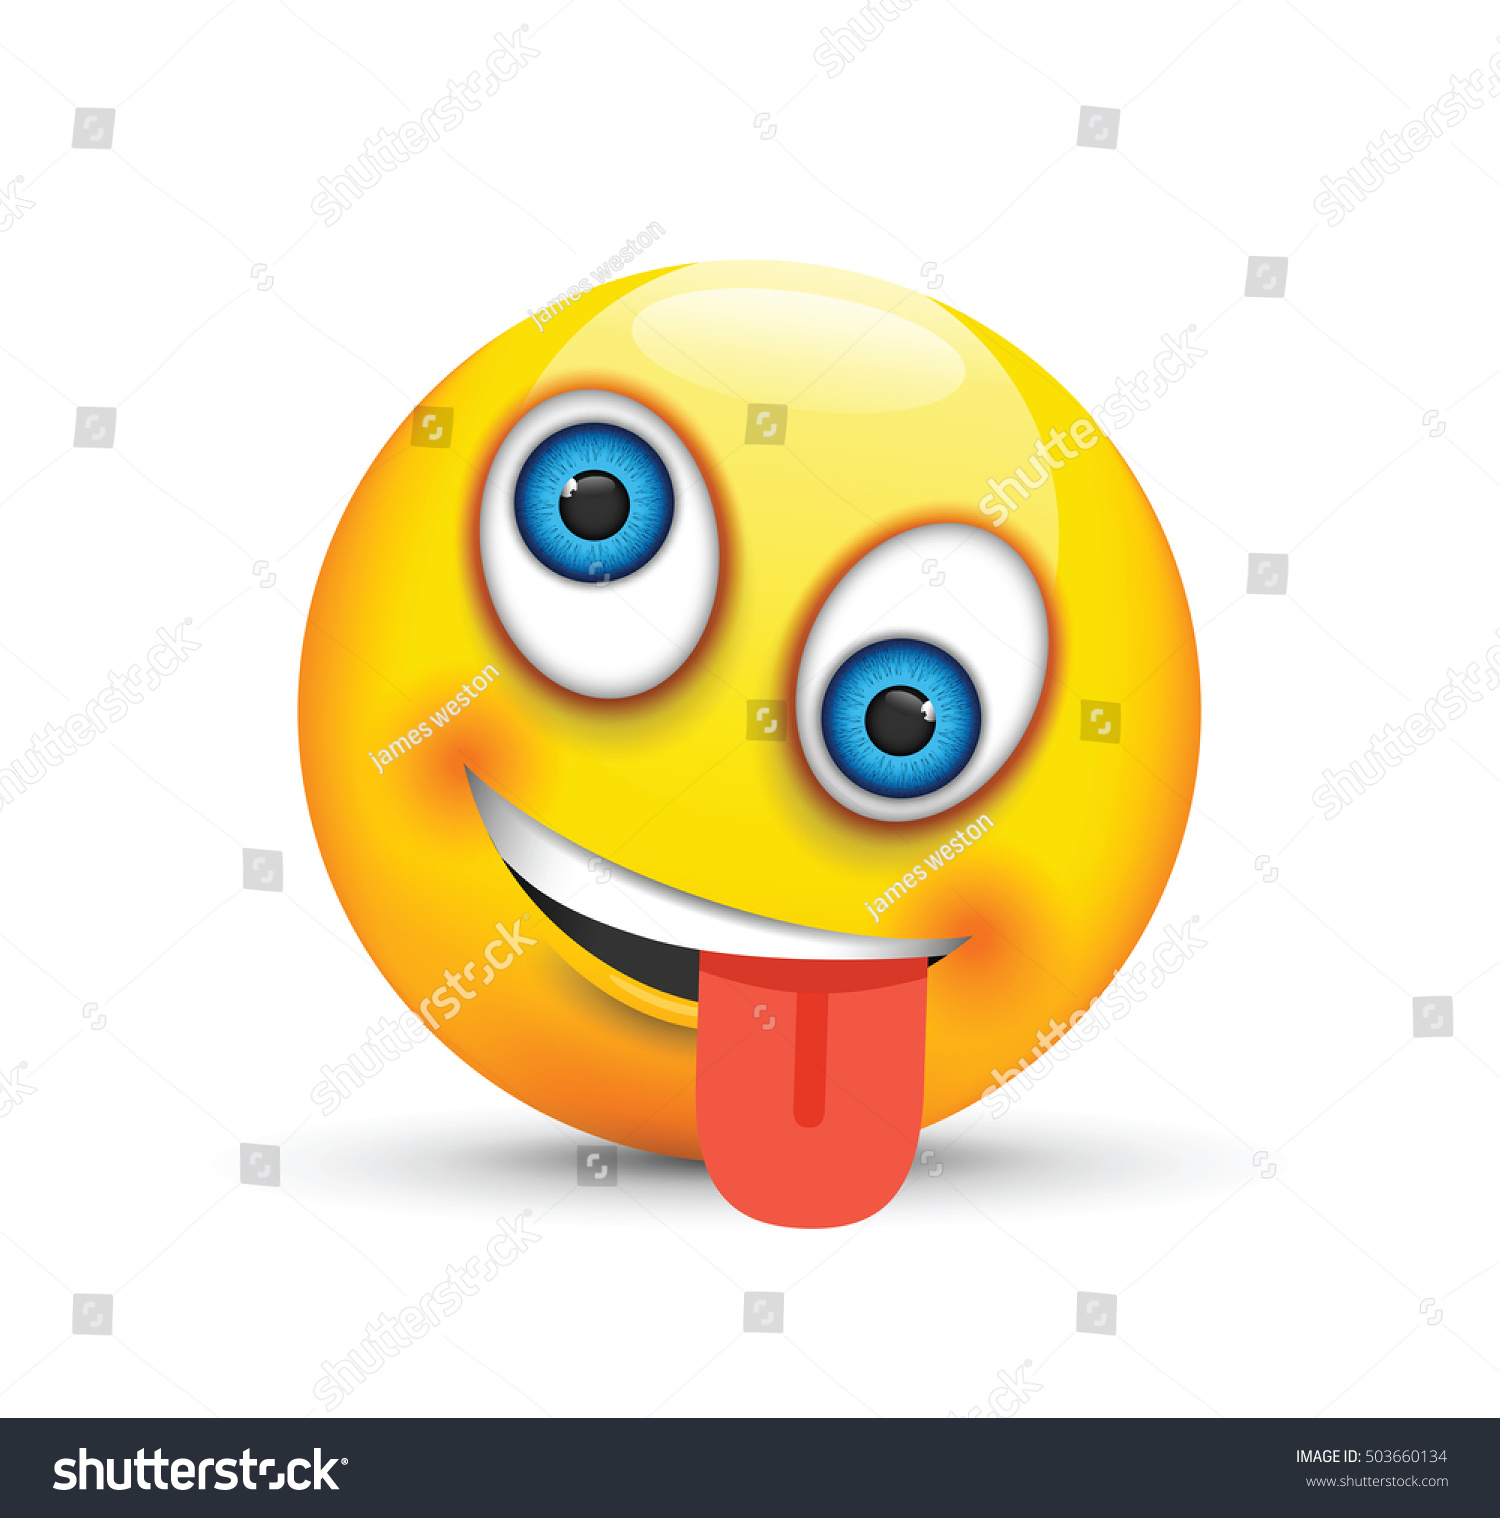 Crazy Emoji Stock Vector Illustration 503660134 : Shutterstock